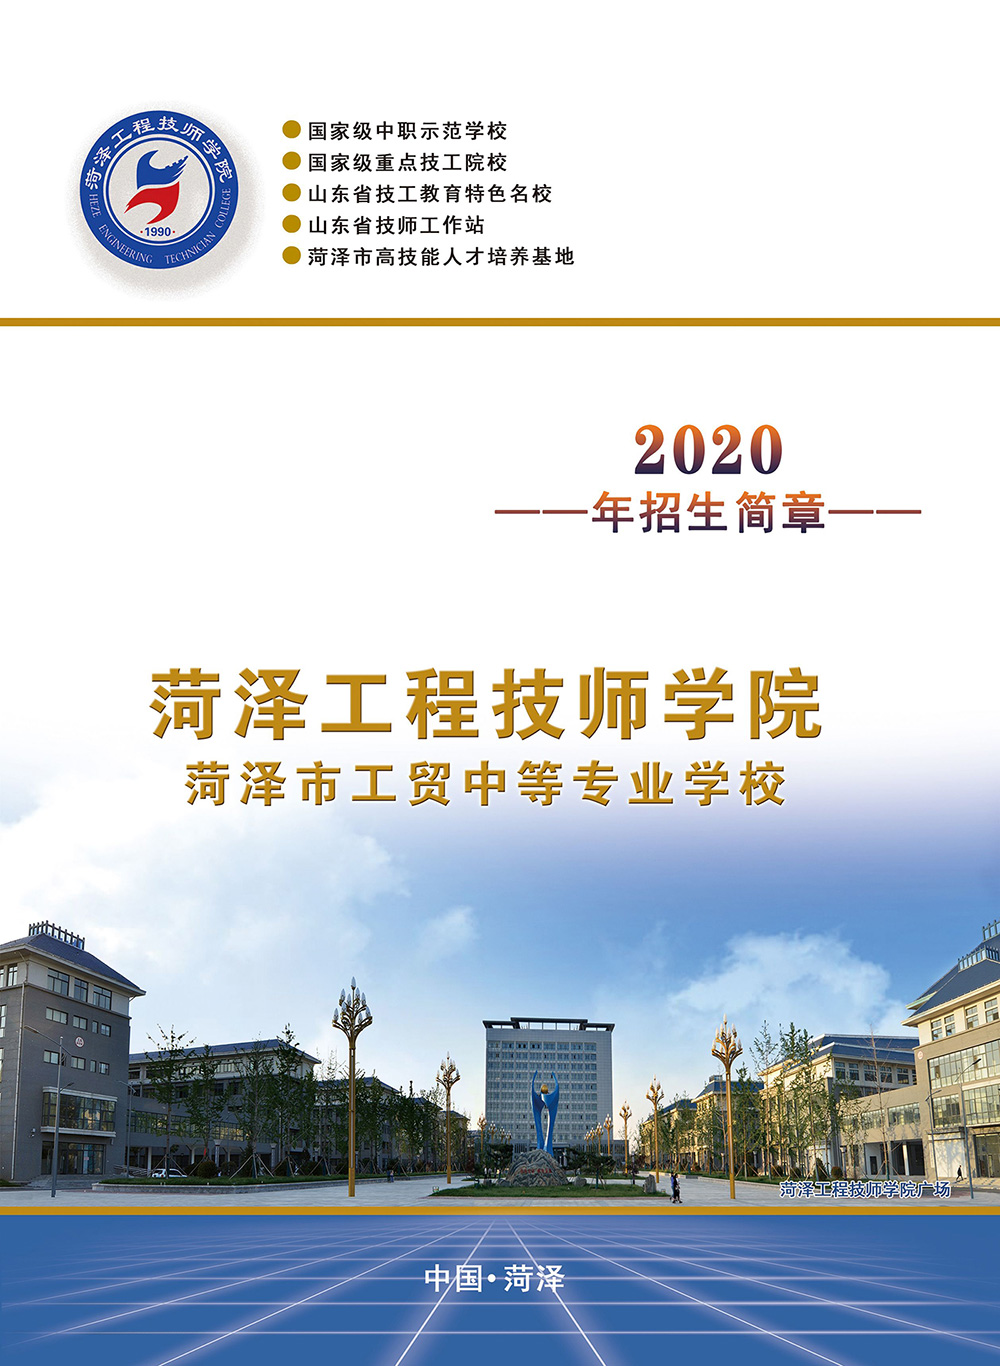 菏泽工程技师学院2020年招生简章